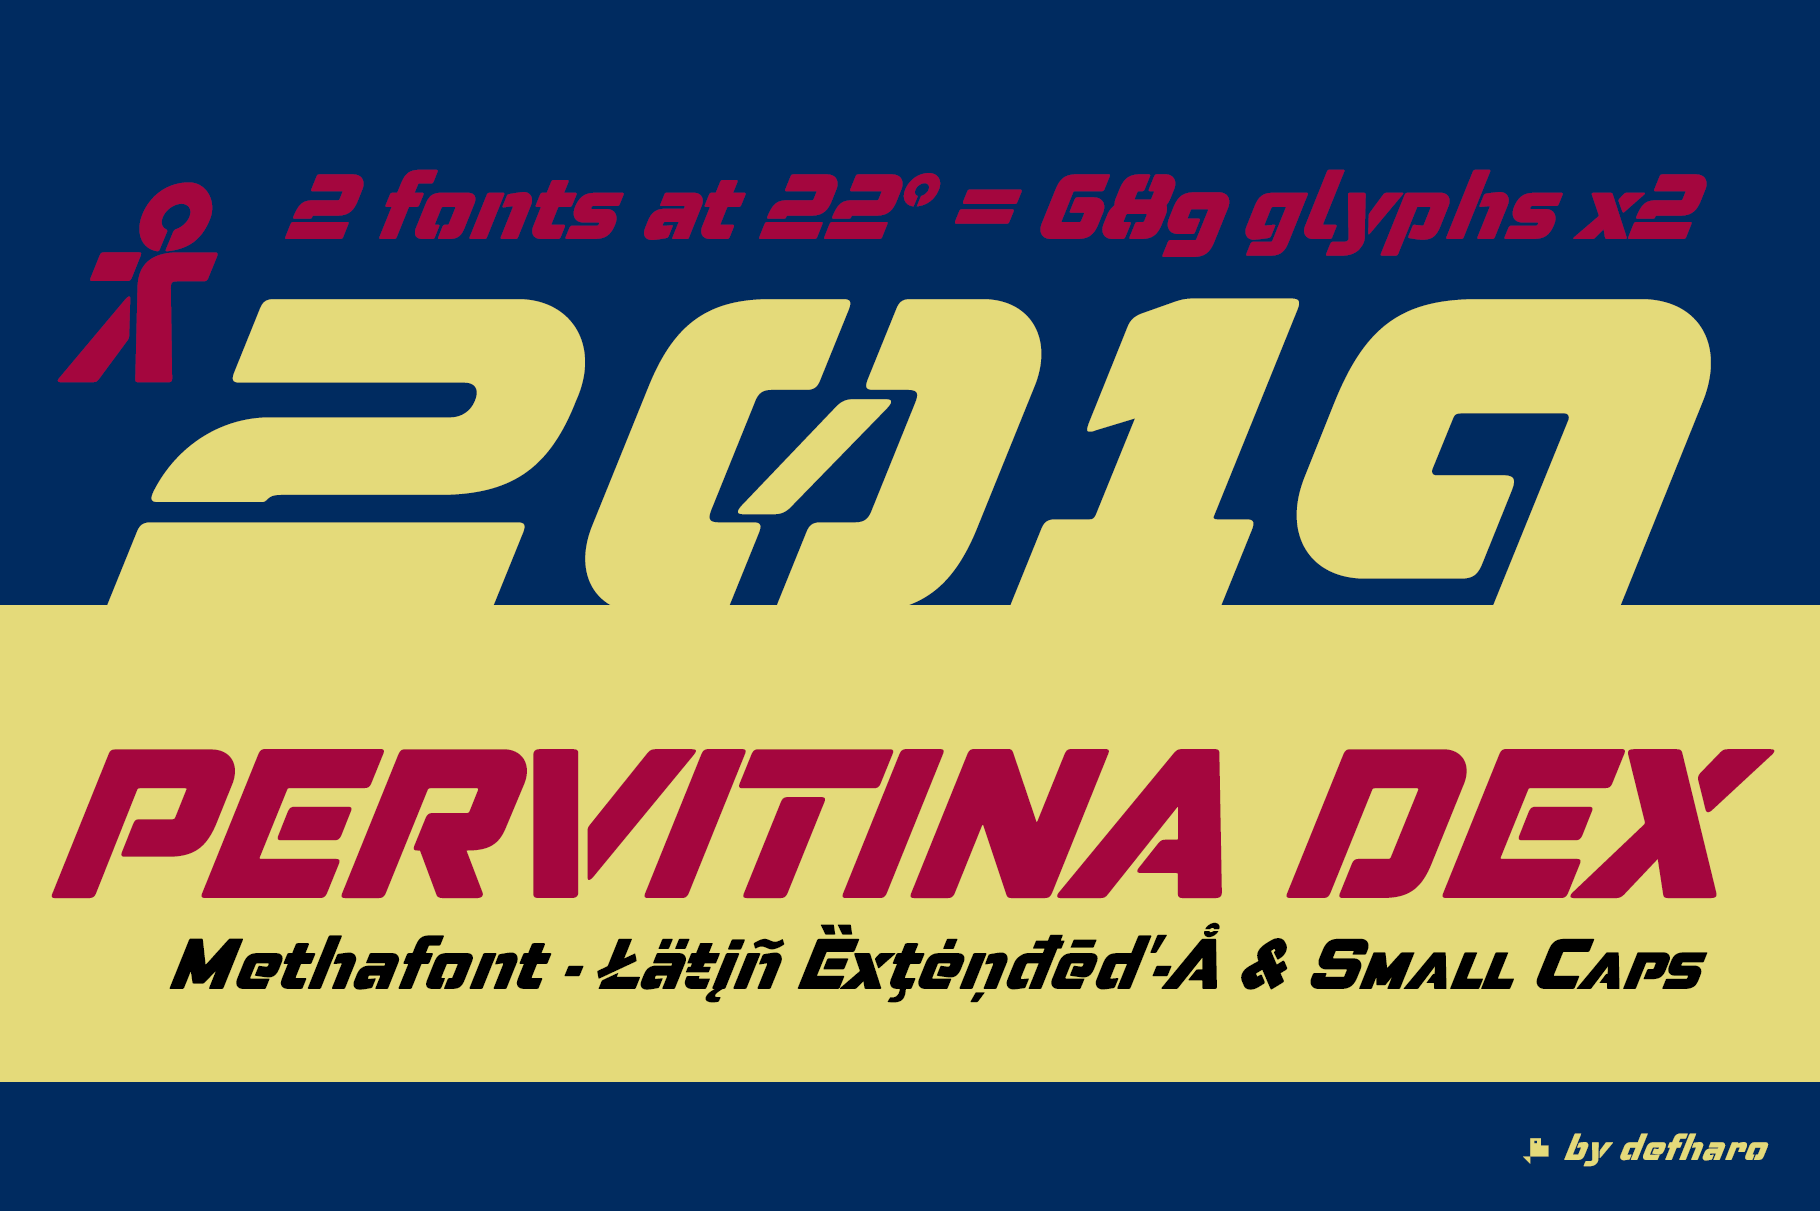 Pervitina-Dex-Cover